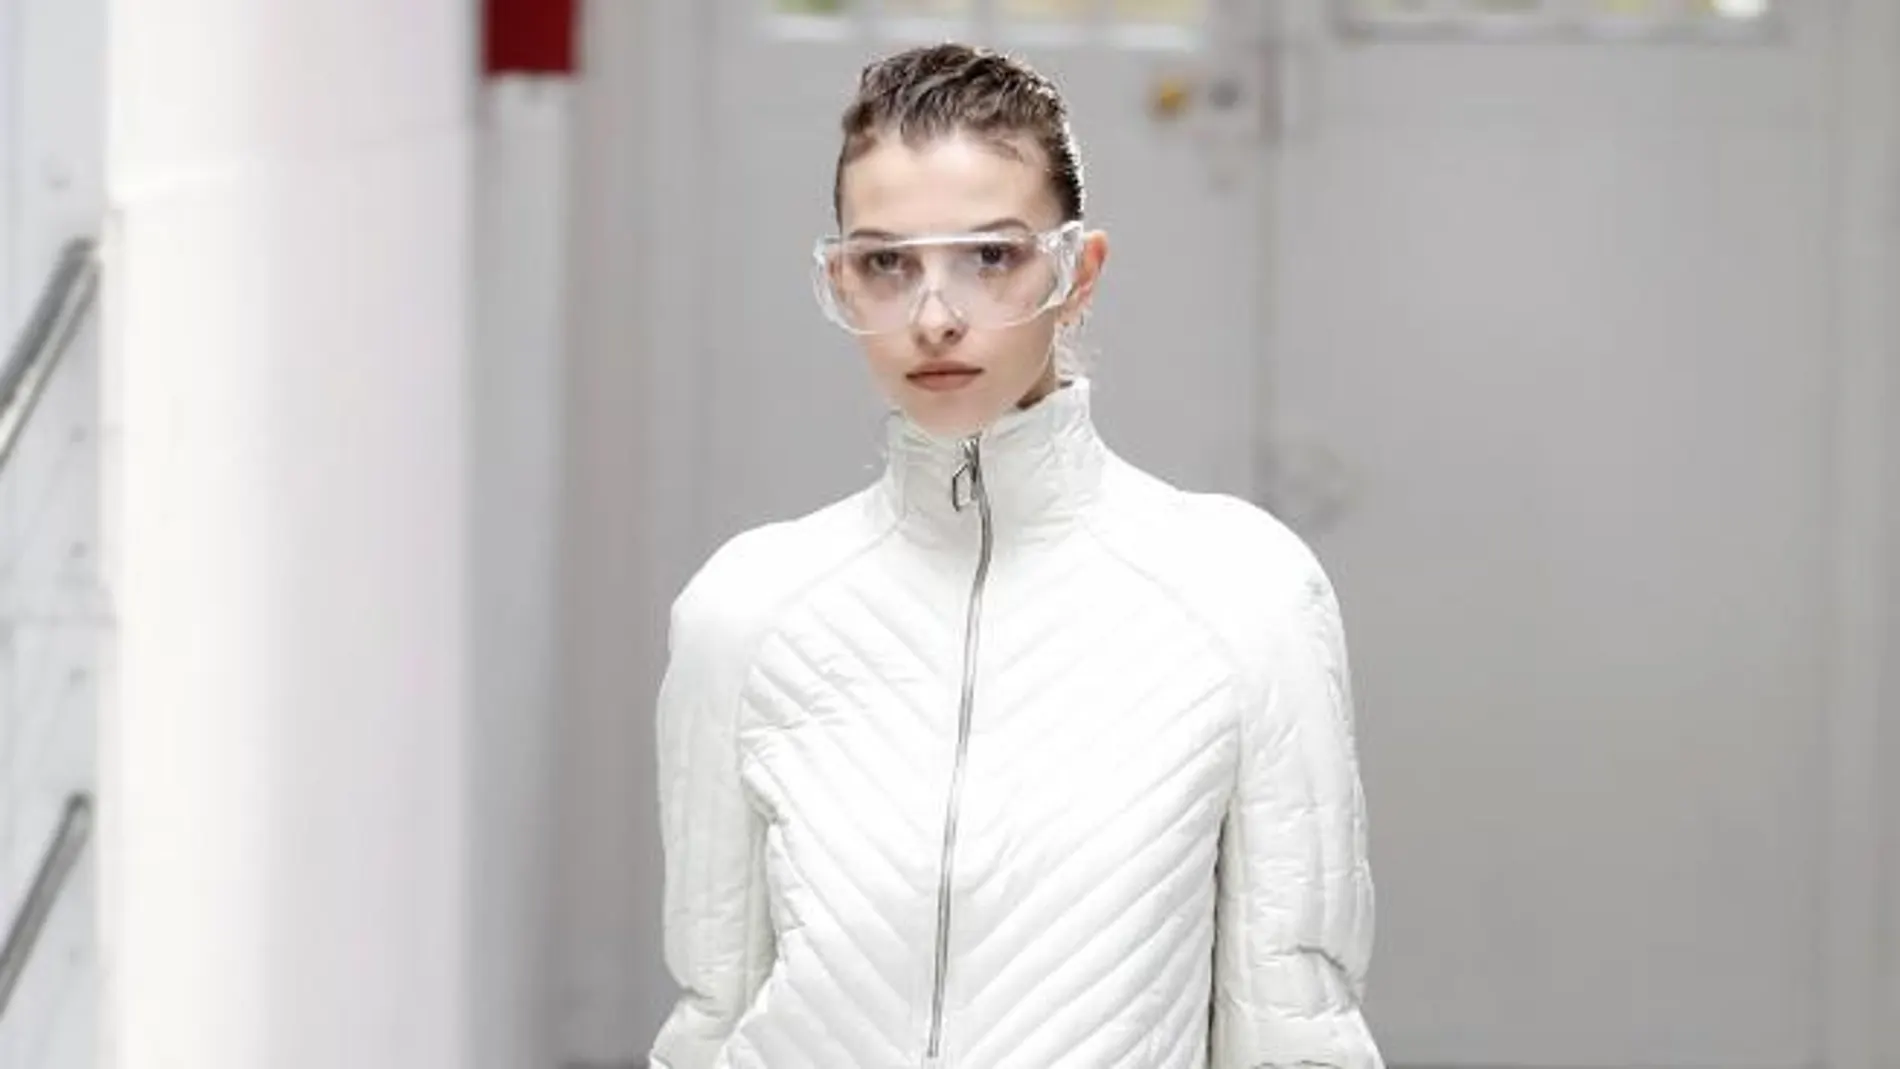 Anne Sophie Madsen se decantó por tonos blancos y centró si interés en el futuro más que en modas pasadas, añadiendo gafas protectoras como las que usan los científicos /Efe